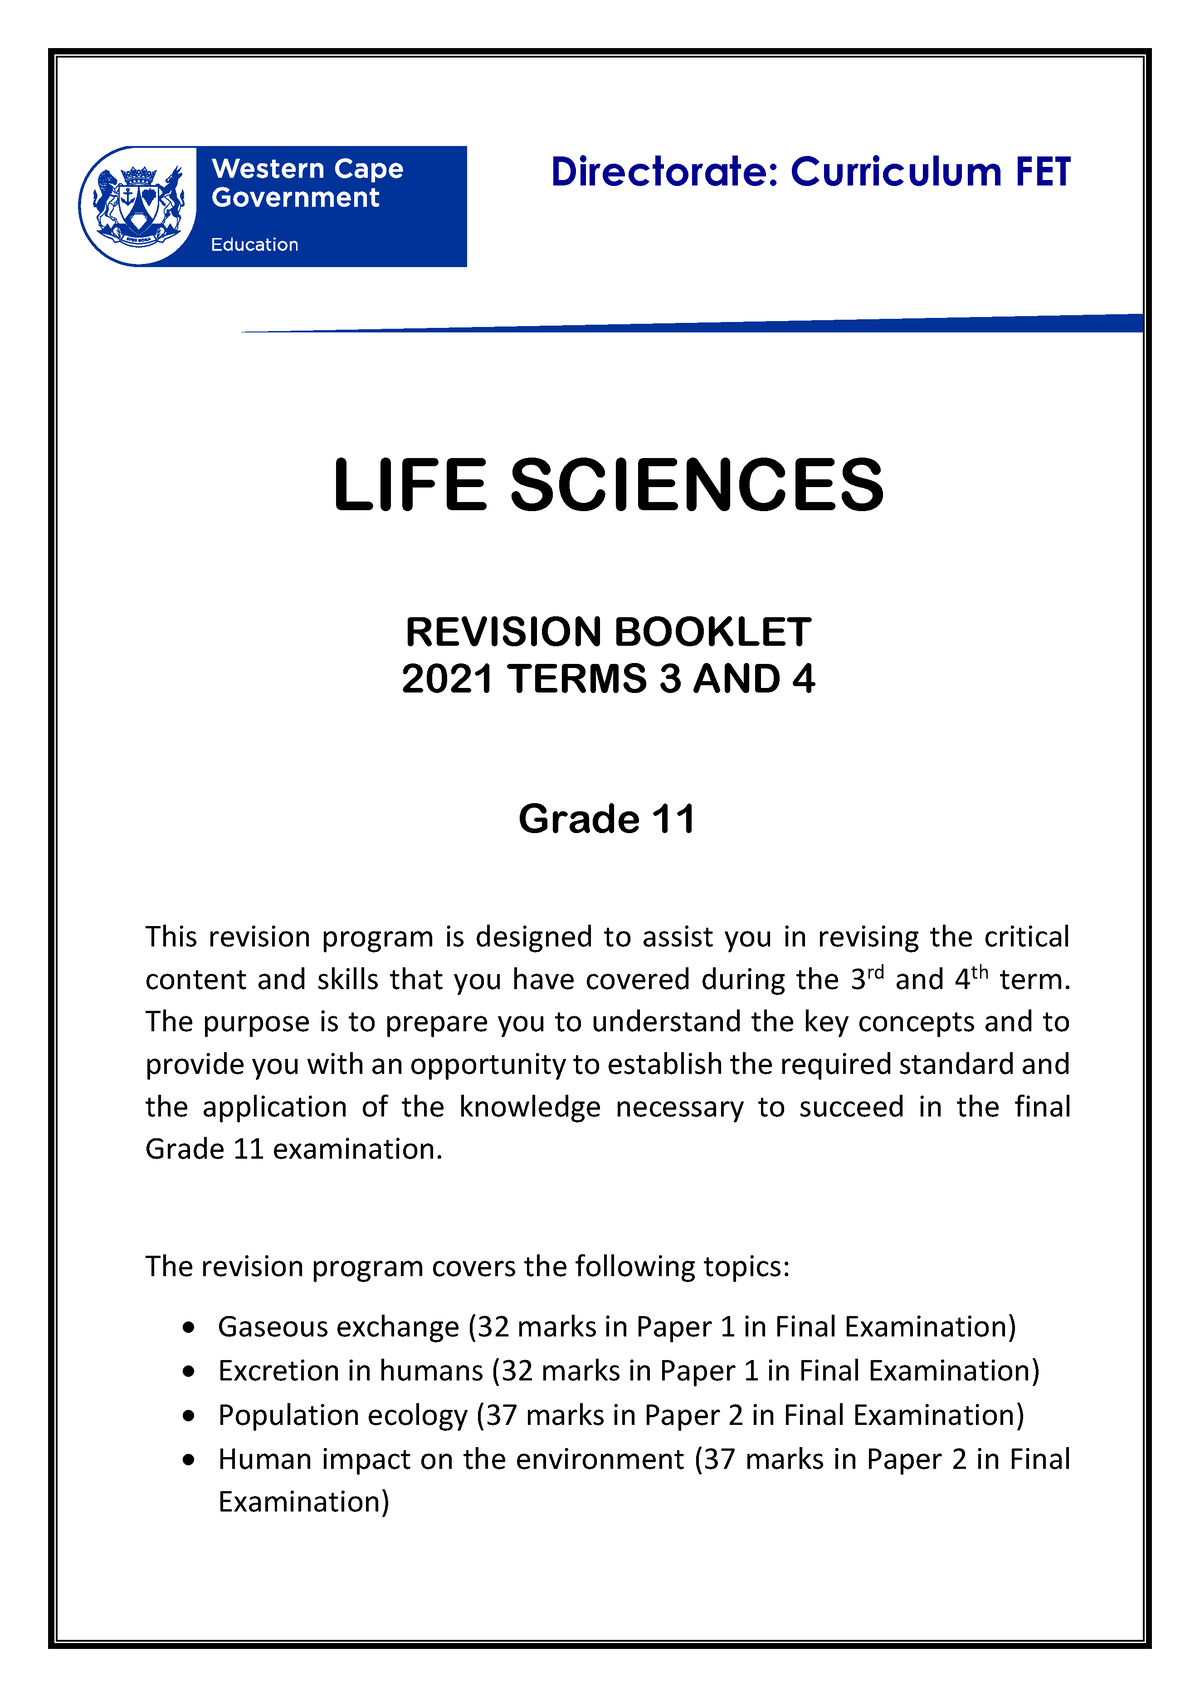 life sciences assignment term 3 grade 11